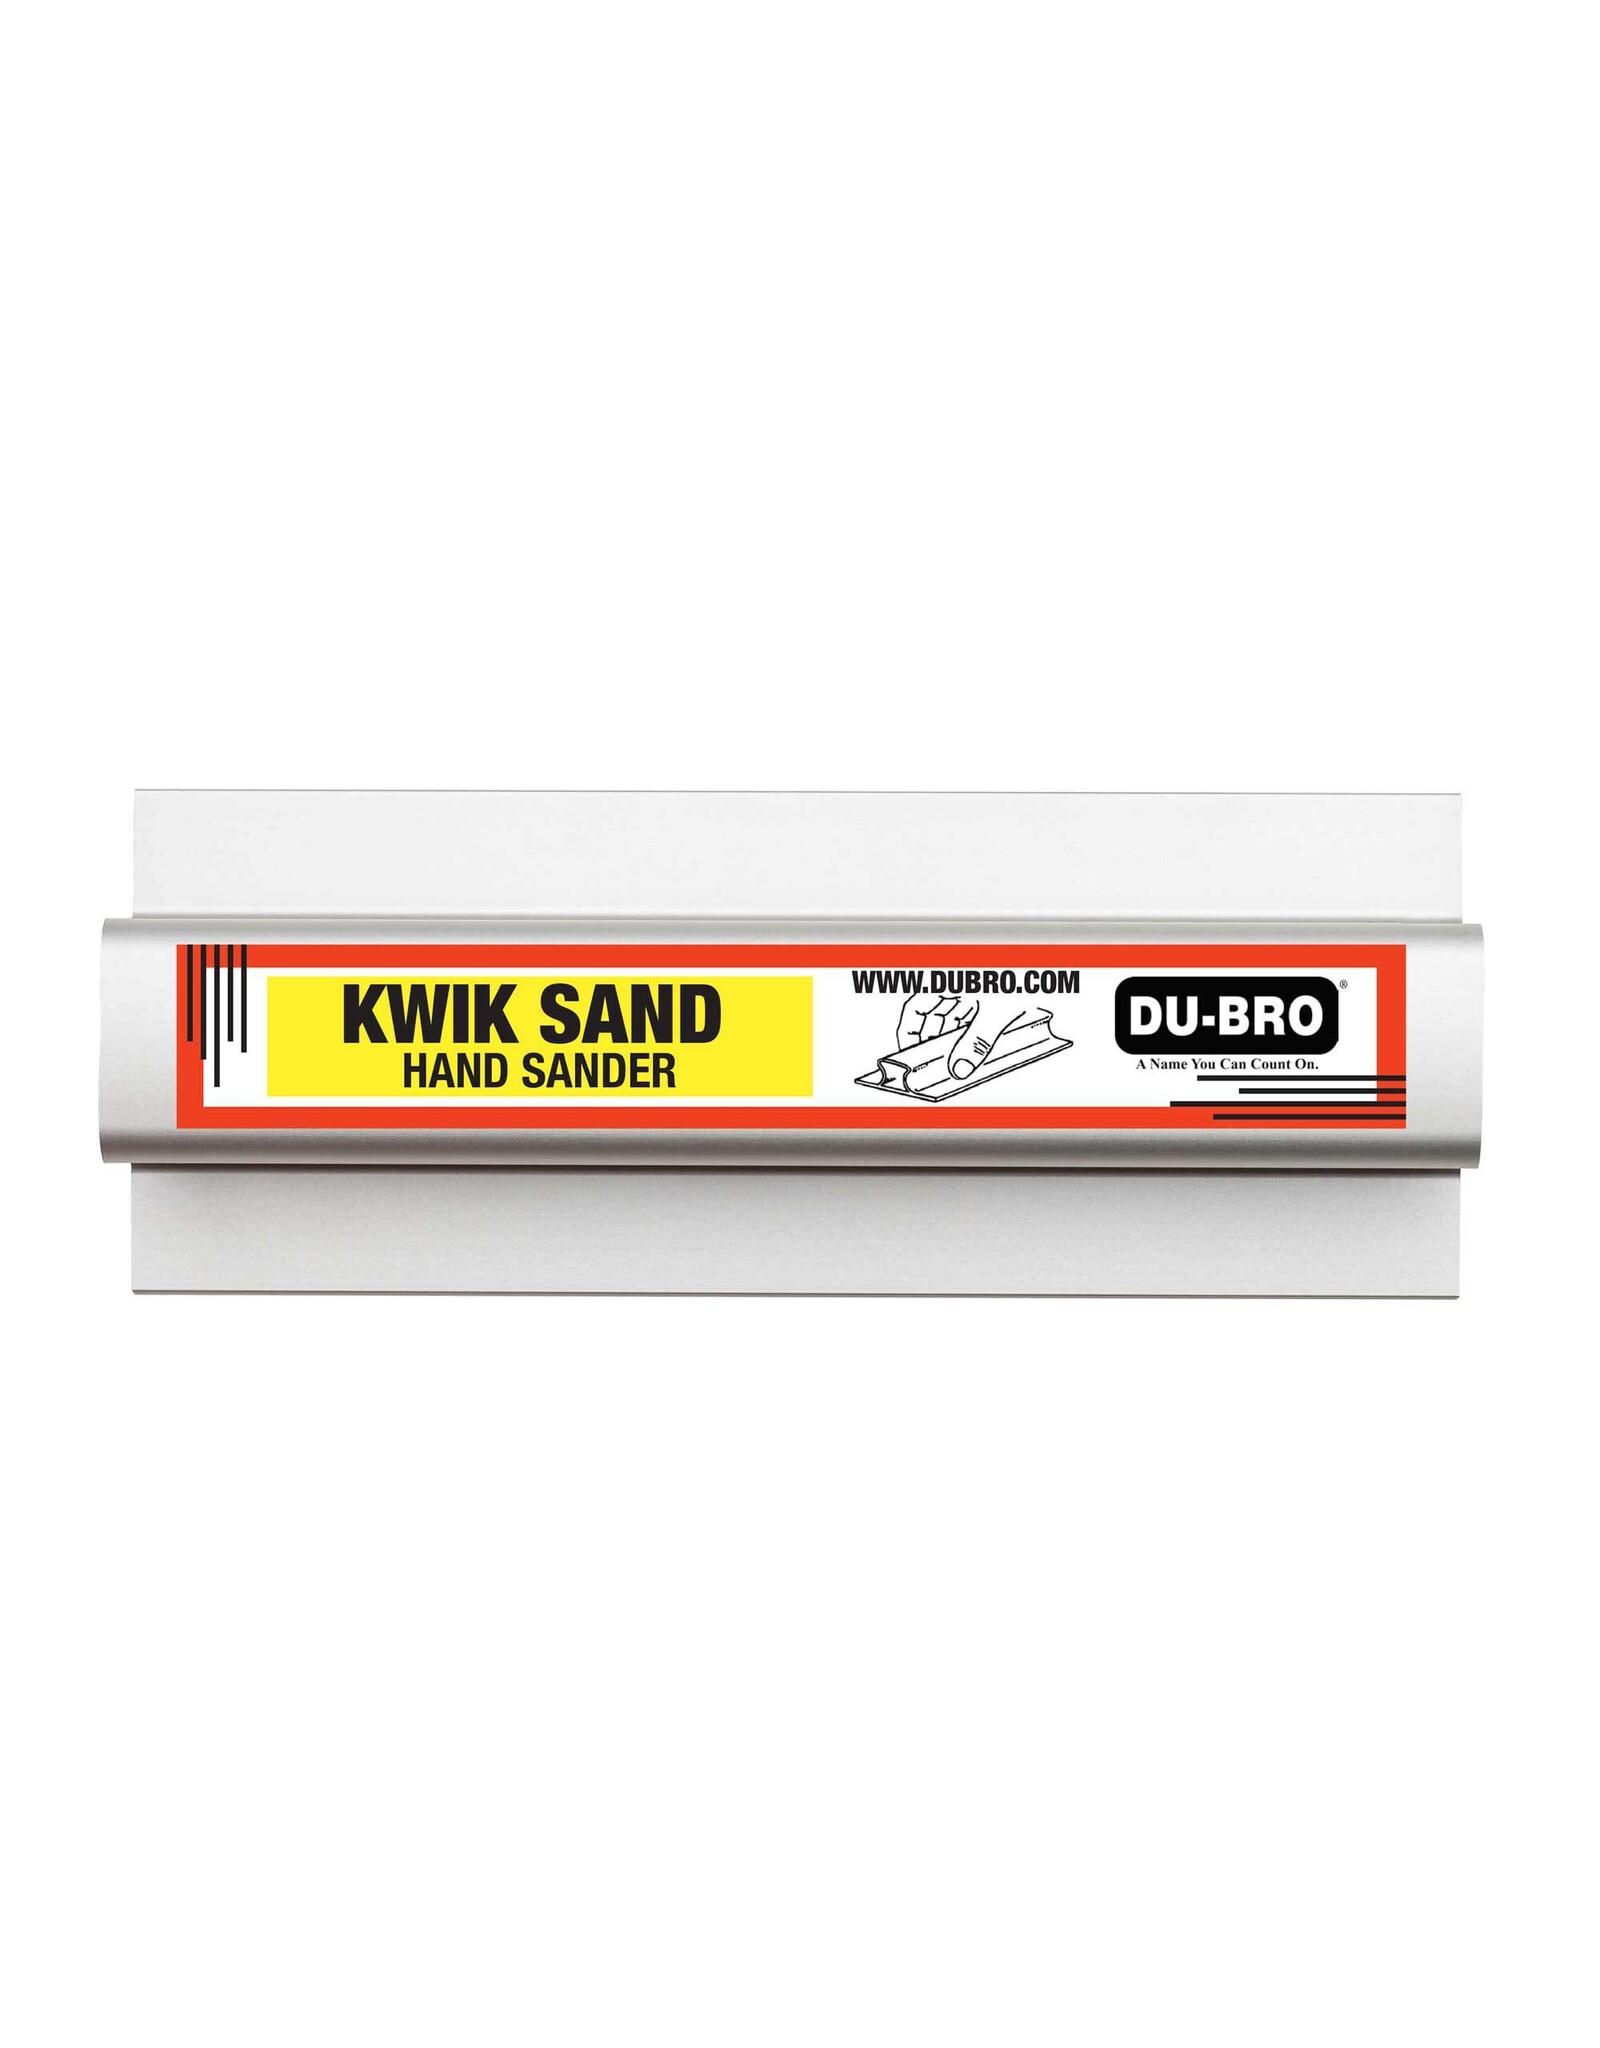 Dubro Copy of 11" Kwik Sand Hand Sander